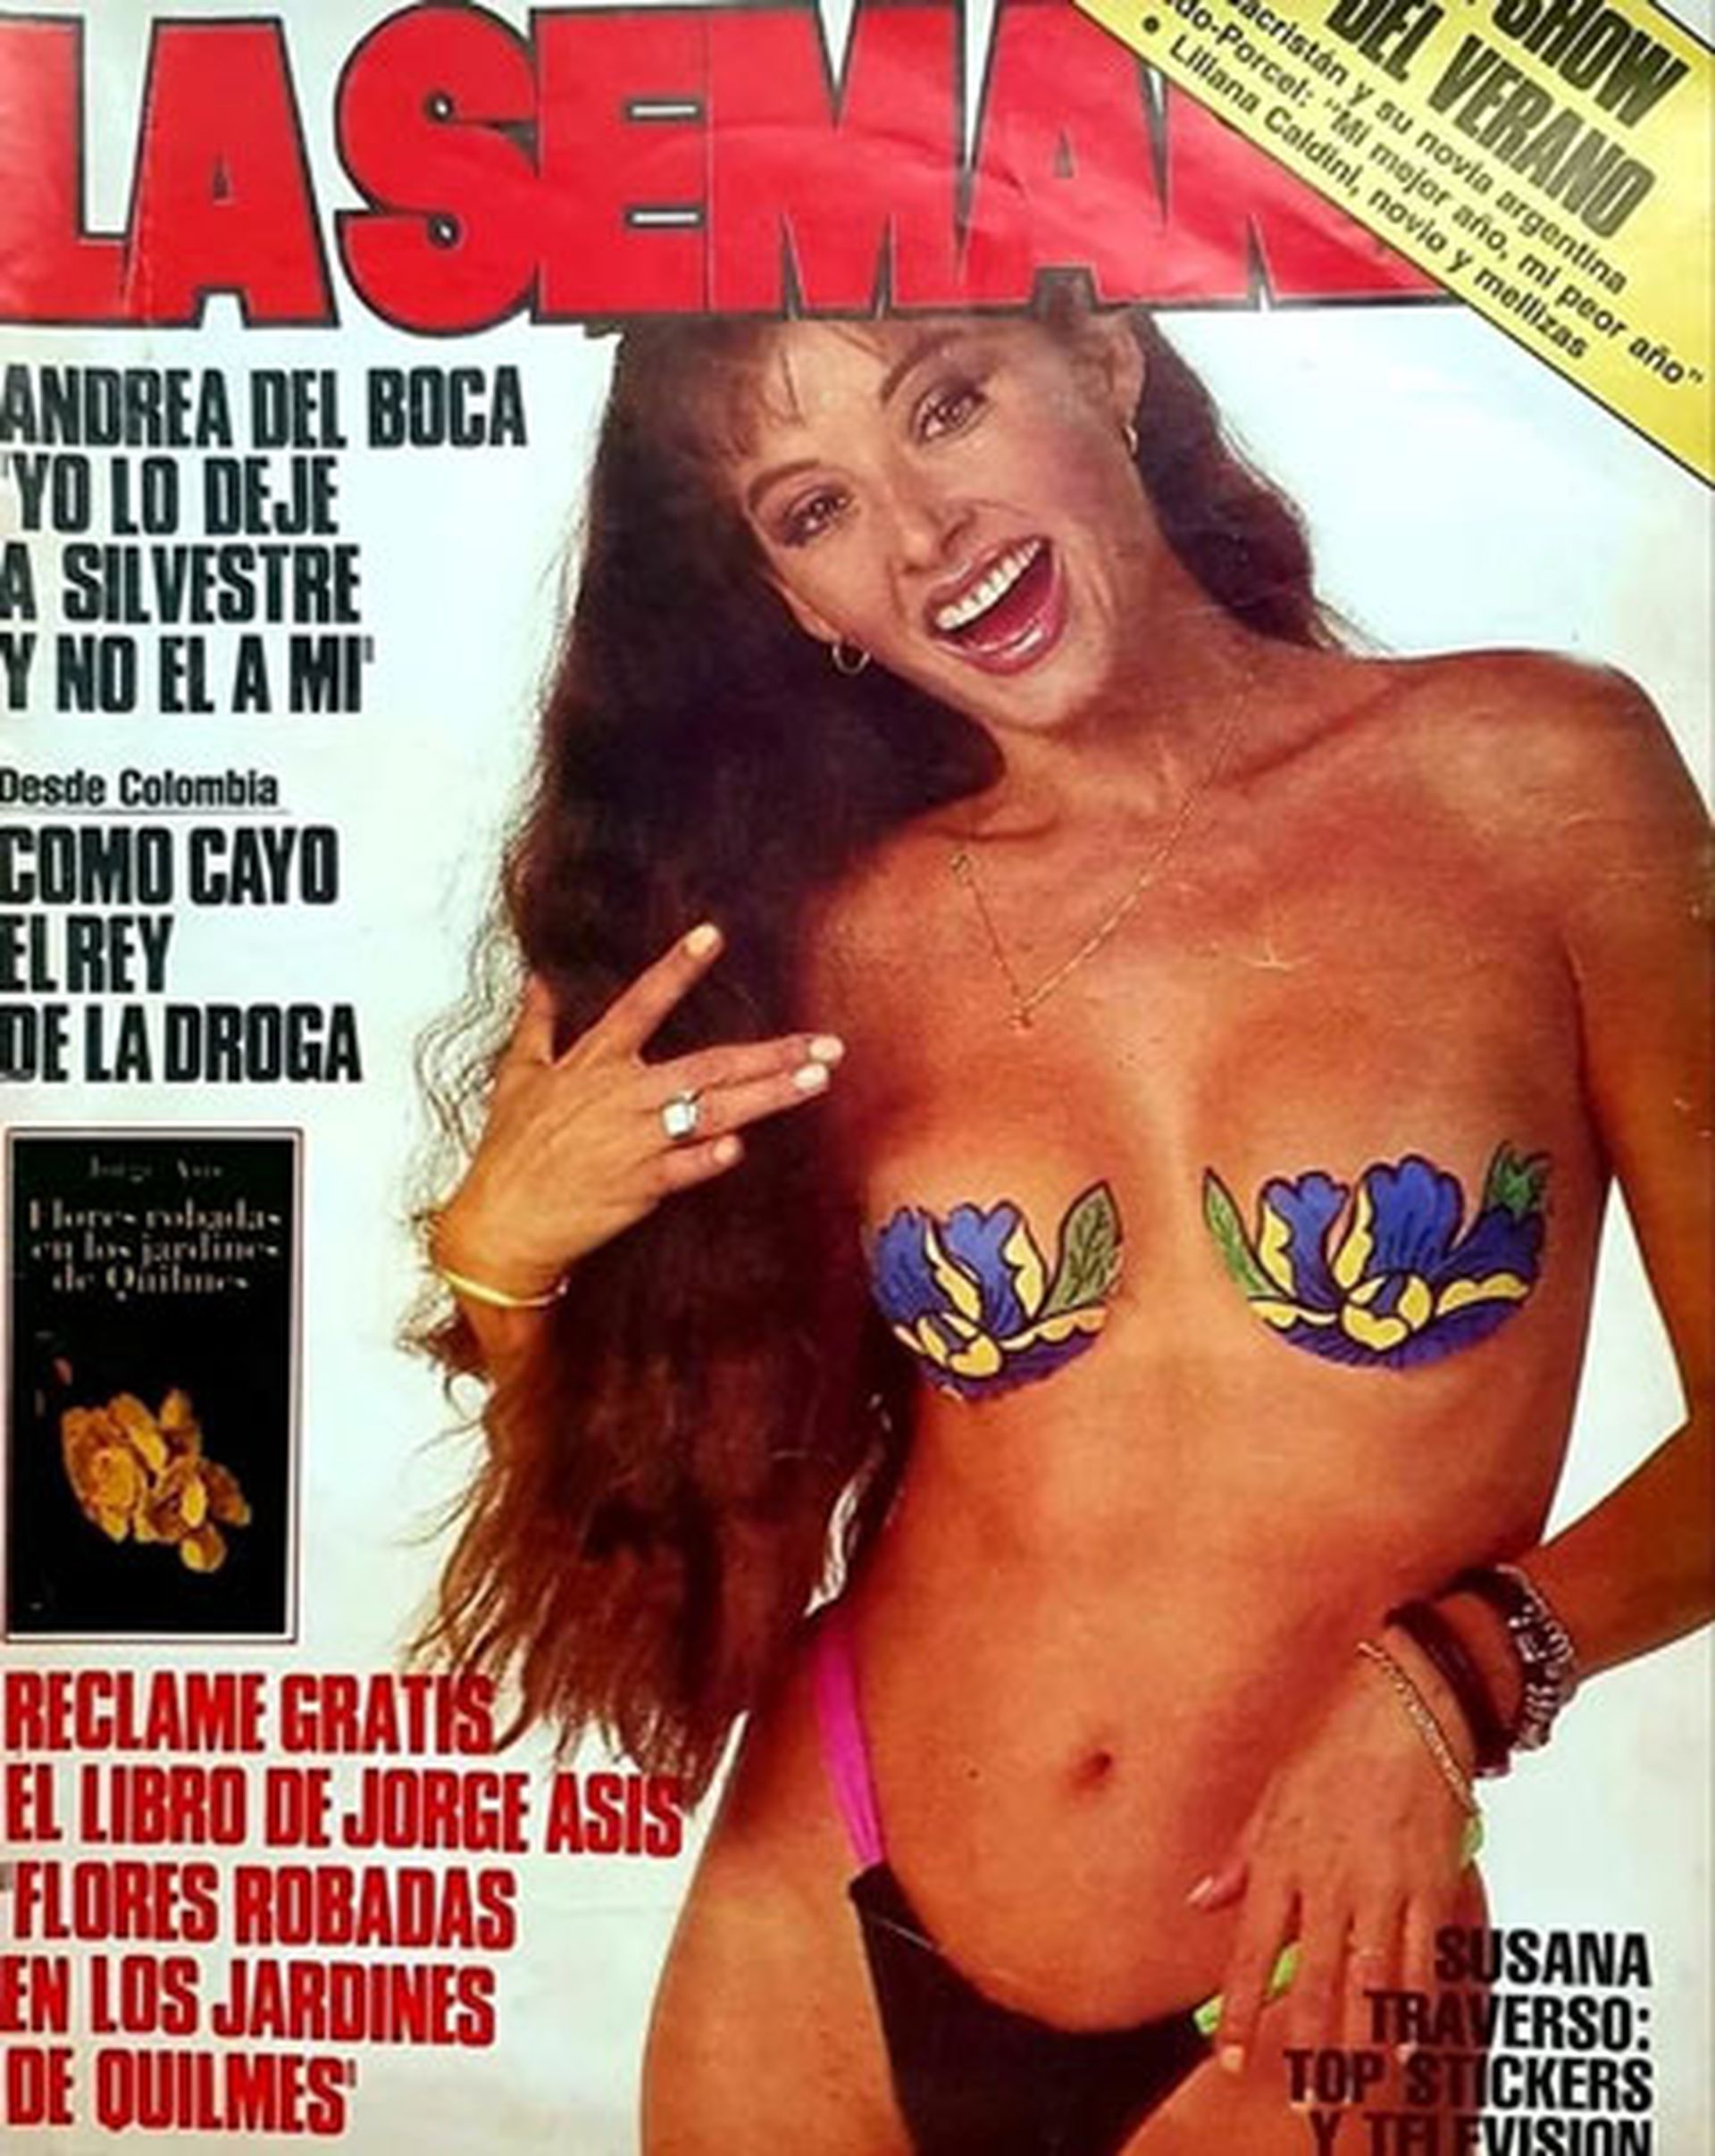 Susana Traverso fue tapa de La Semana con "top stickers"